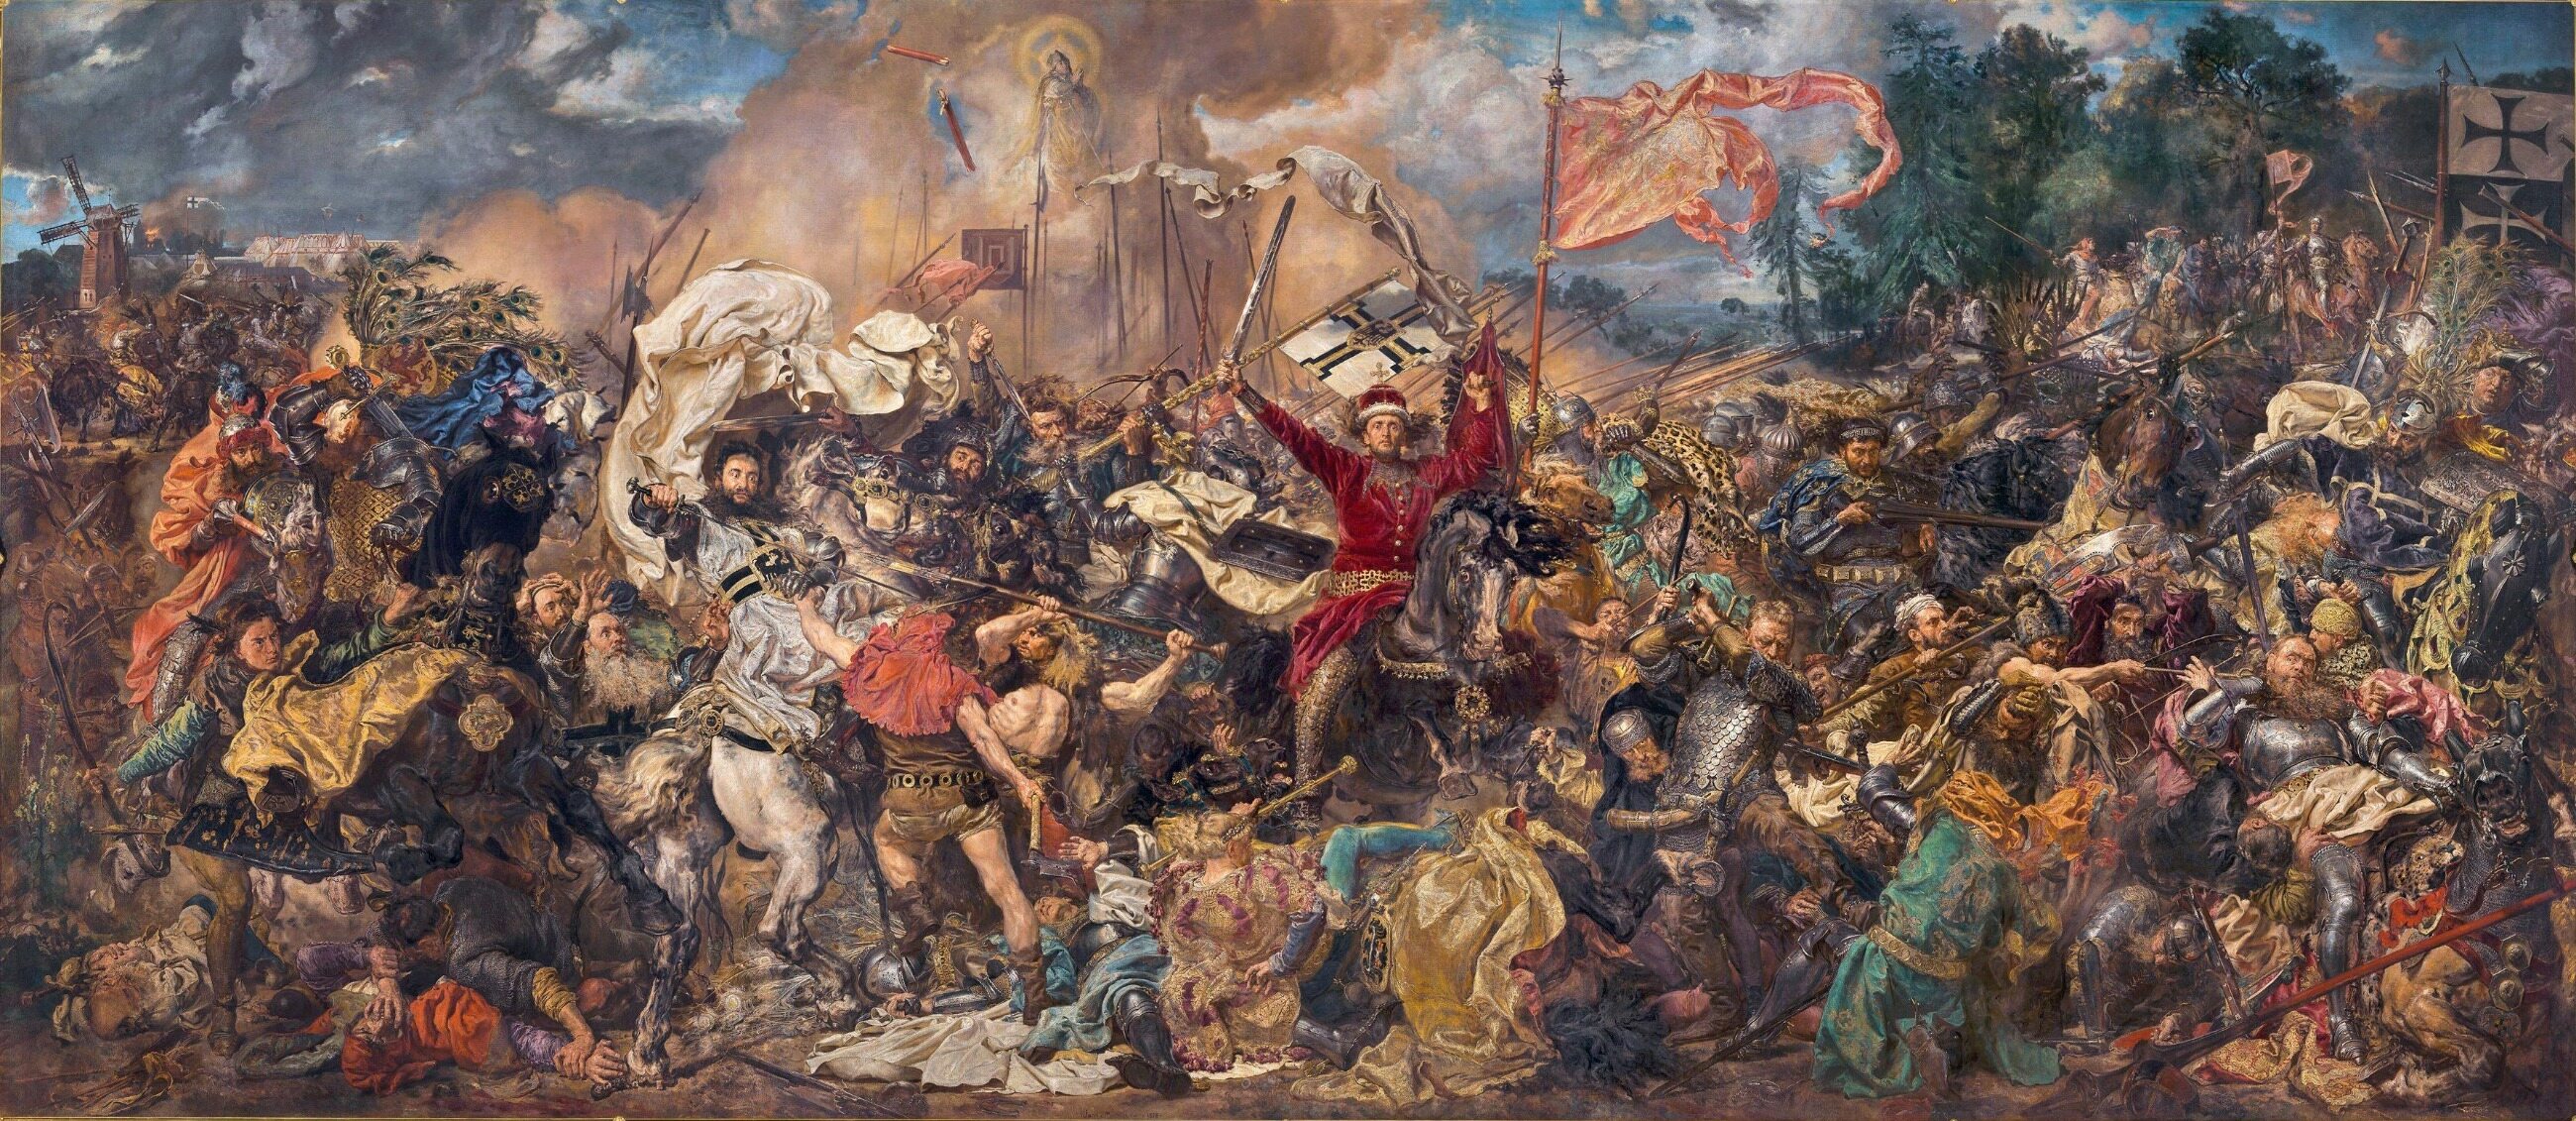 Czy na najsłynniejszym polskim obrazie Matejki „Bitwa pod Grunwaldem” został uwieczniony król Władysław Jagiełło?